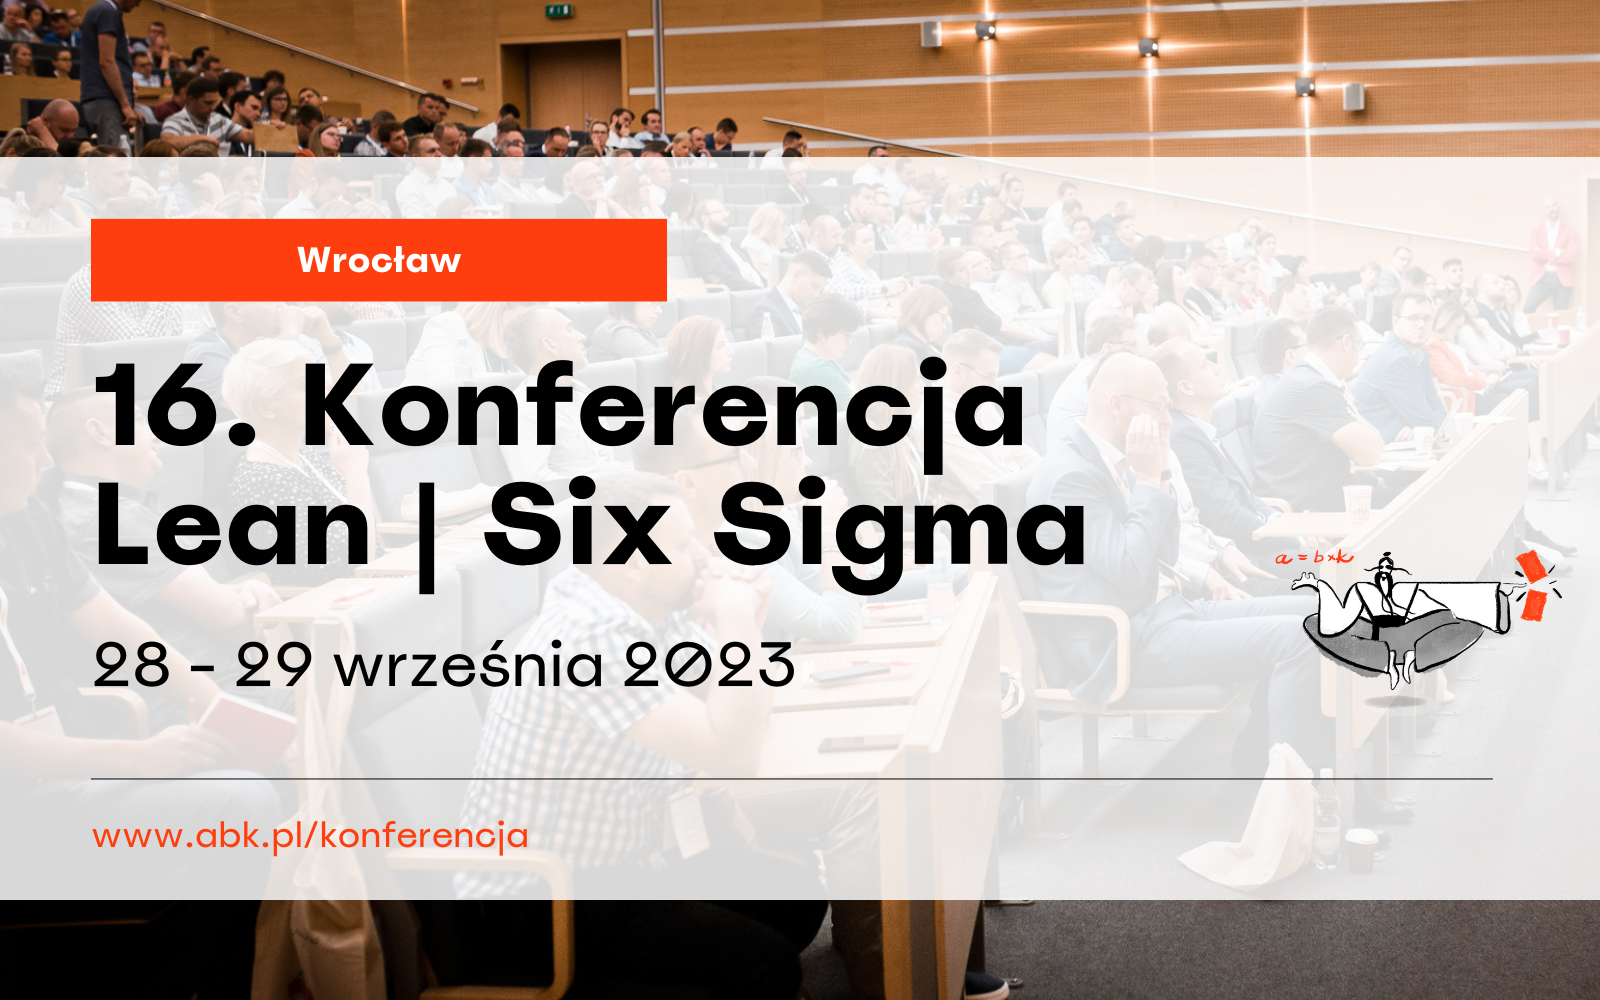 Zapraszamy na 16. Konferencję Lean | Six Sigma